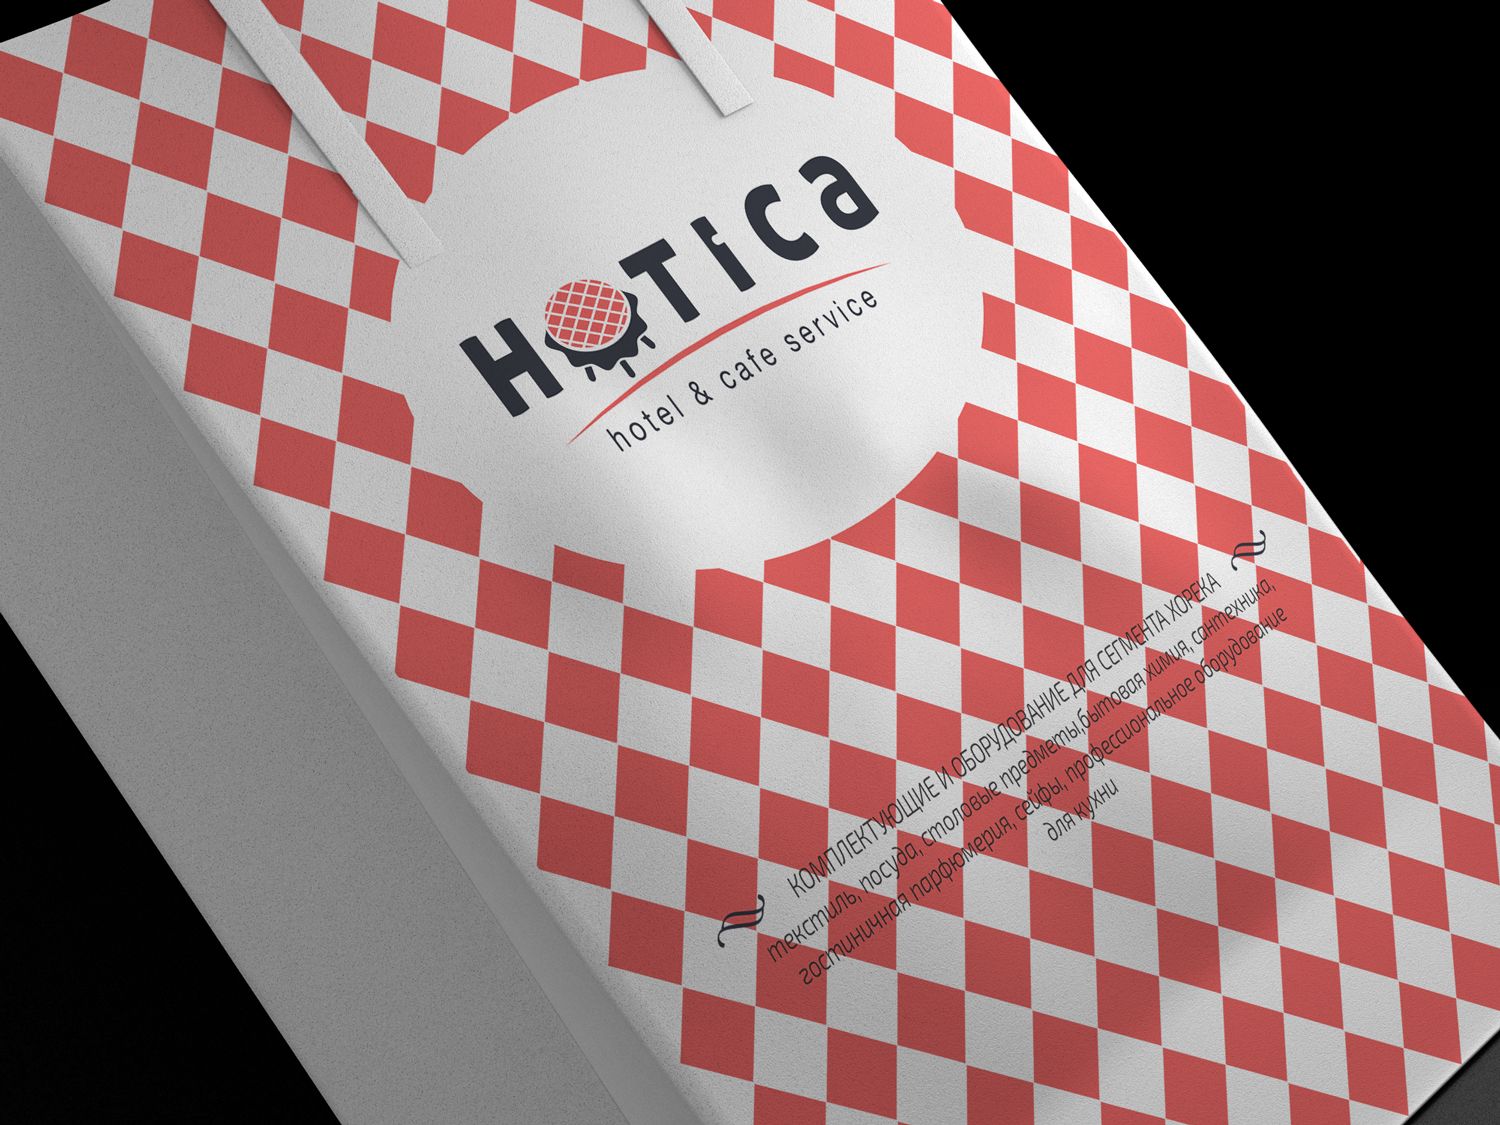 Лого и фирменный стиль для  HOTICA или ОТИКА  (хотелось бы взгляд дизайнера) - дизайнер zanru